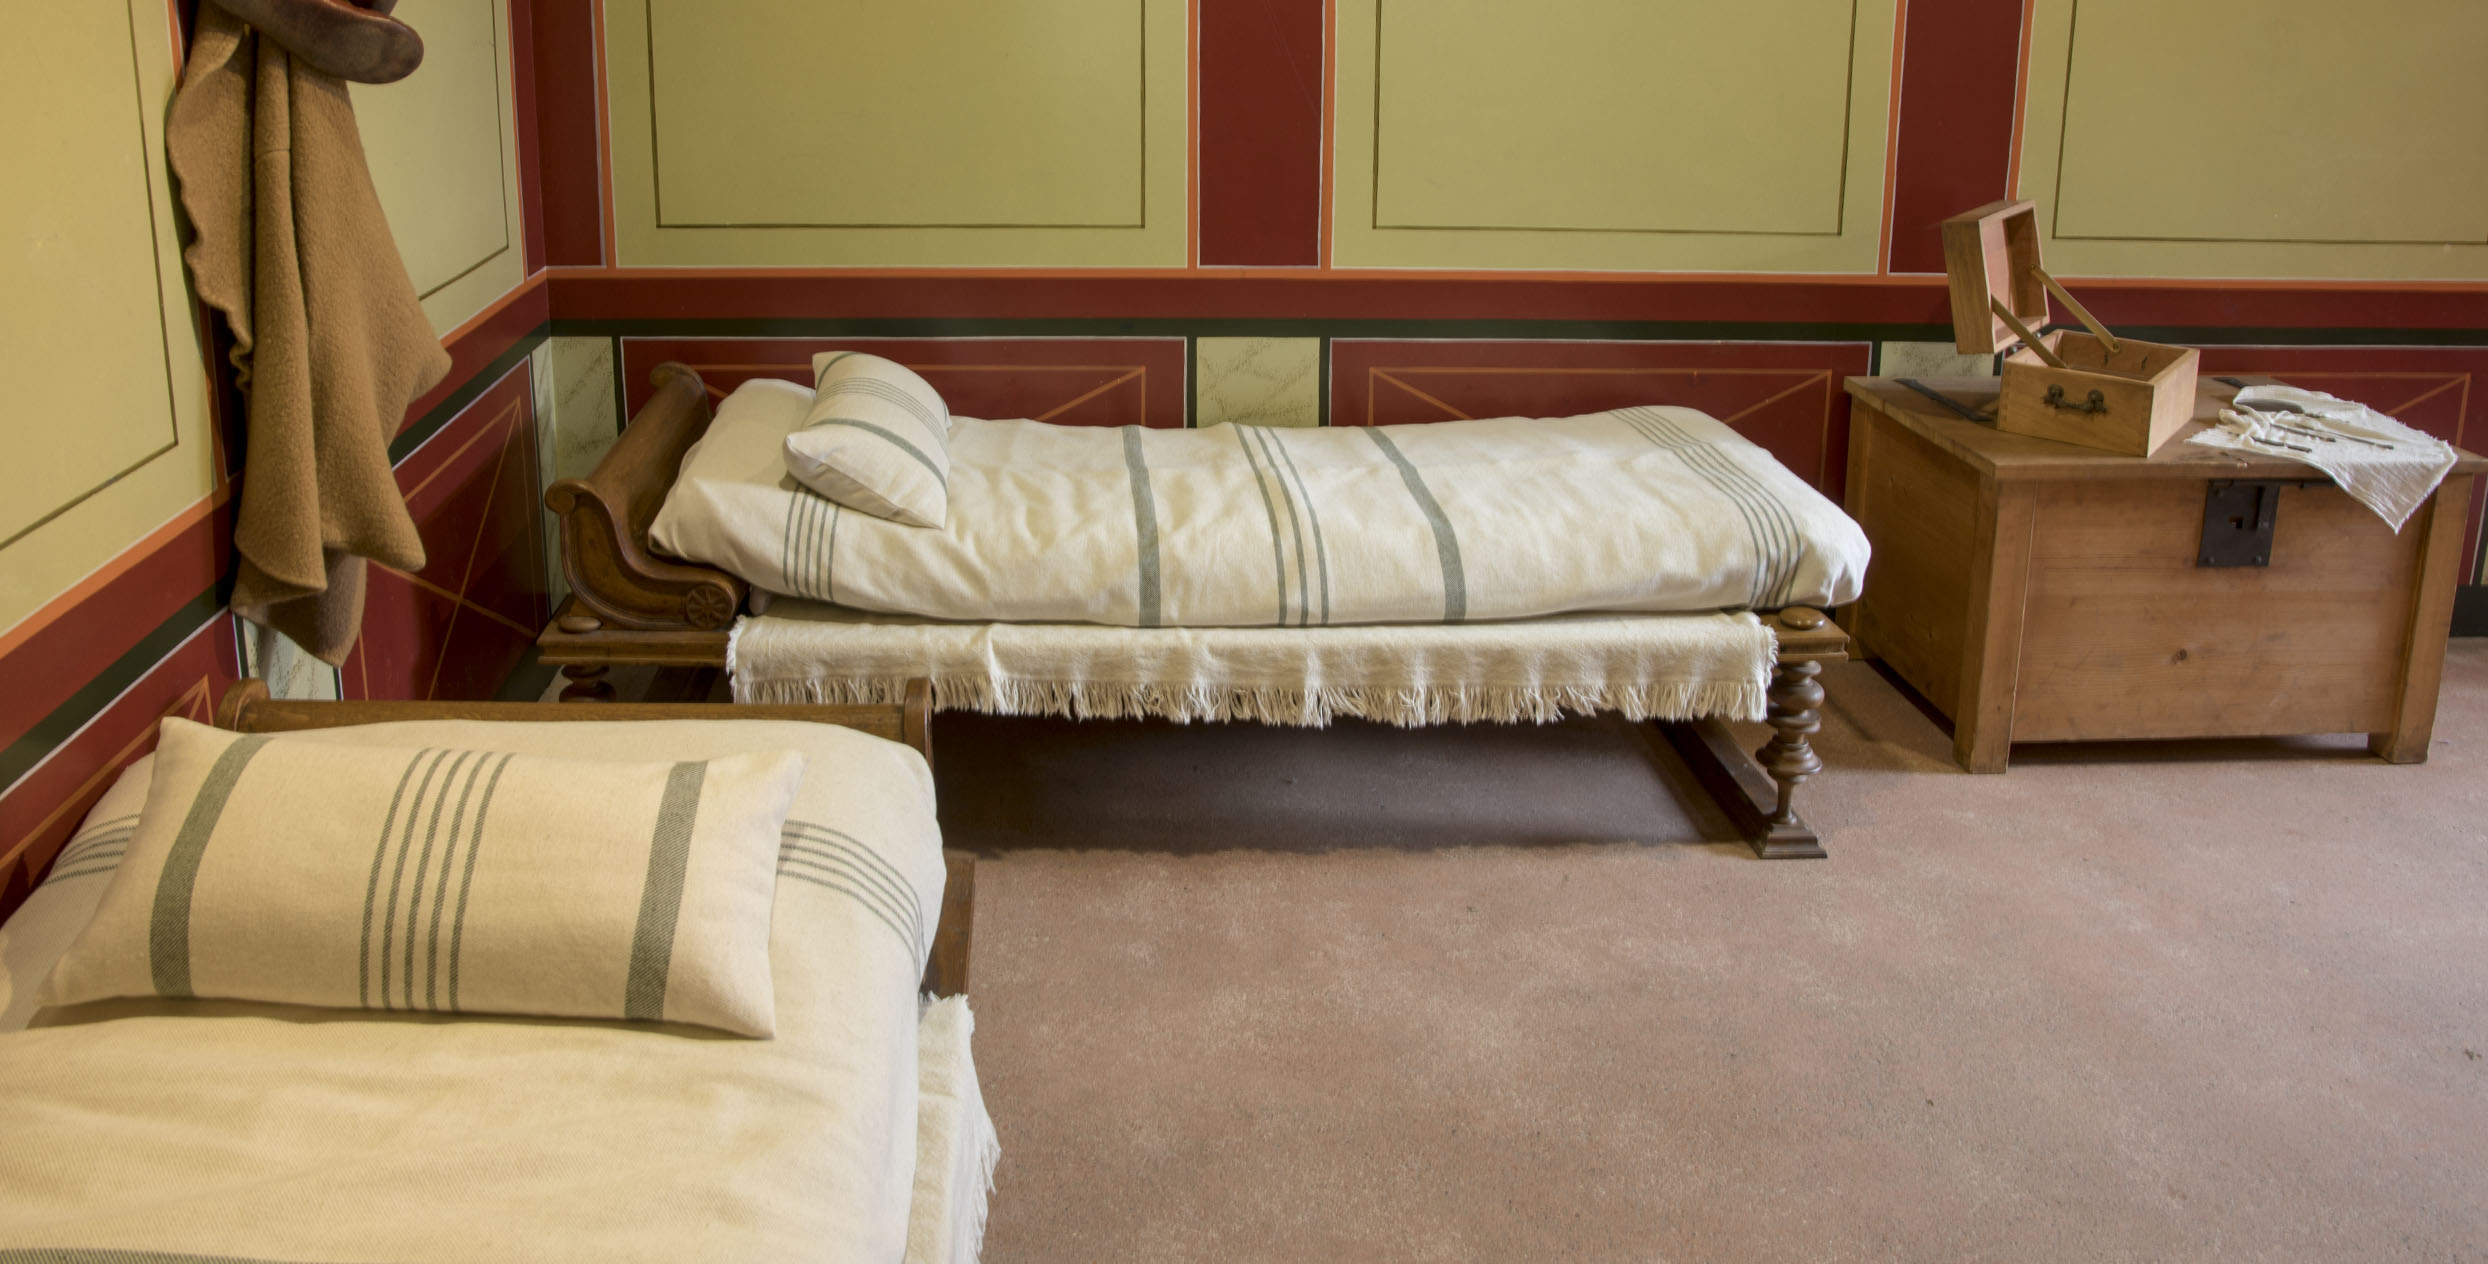 Das Foto zeigt einen Raum in Augusta Raurica mit Replikationen von römischen Betten. Die Bettbezüge sind weiss mit hellgrauen Streifen.